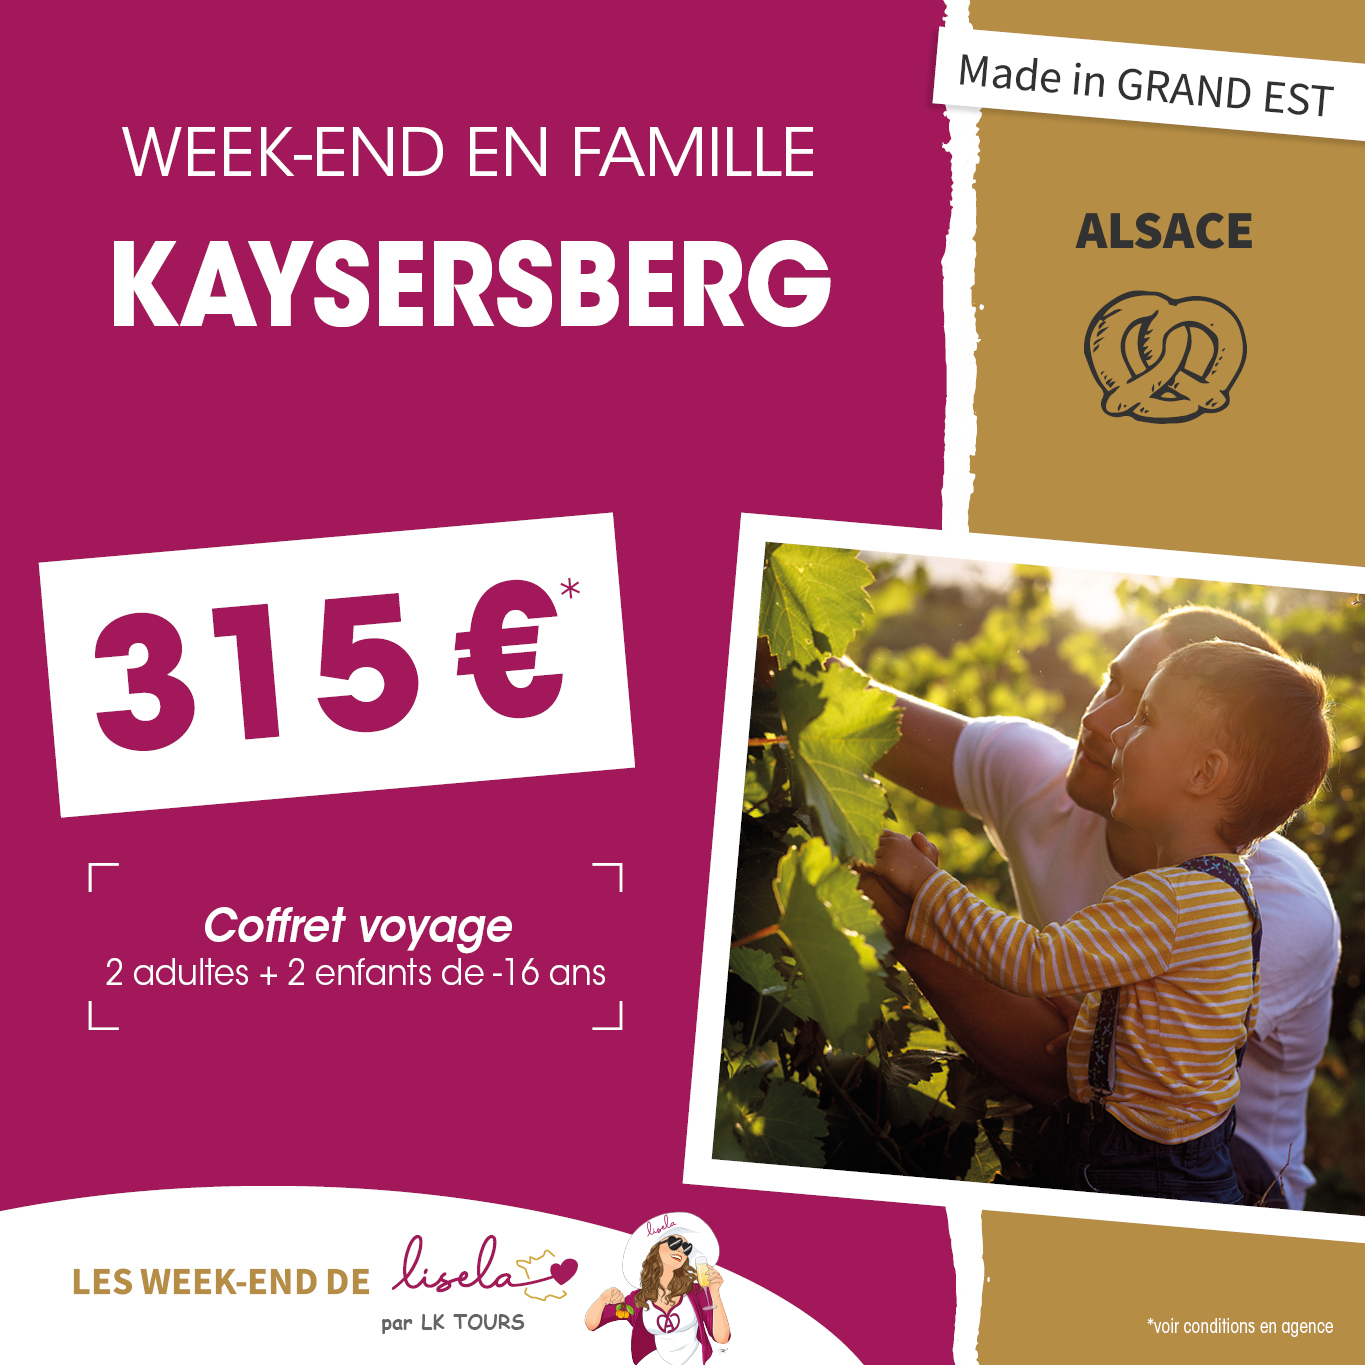 WEEK-END EN FAMILLE KAYSERSBERG